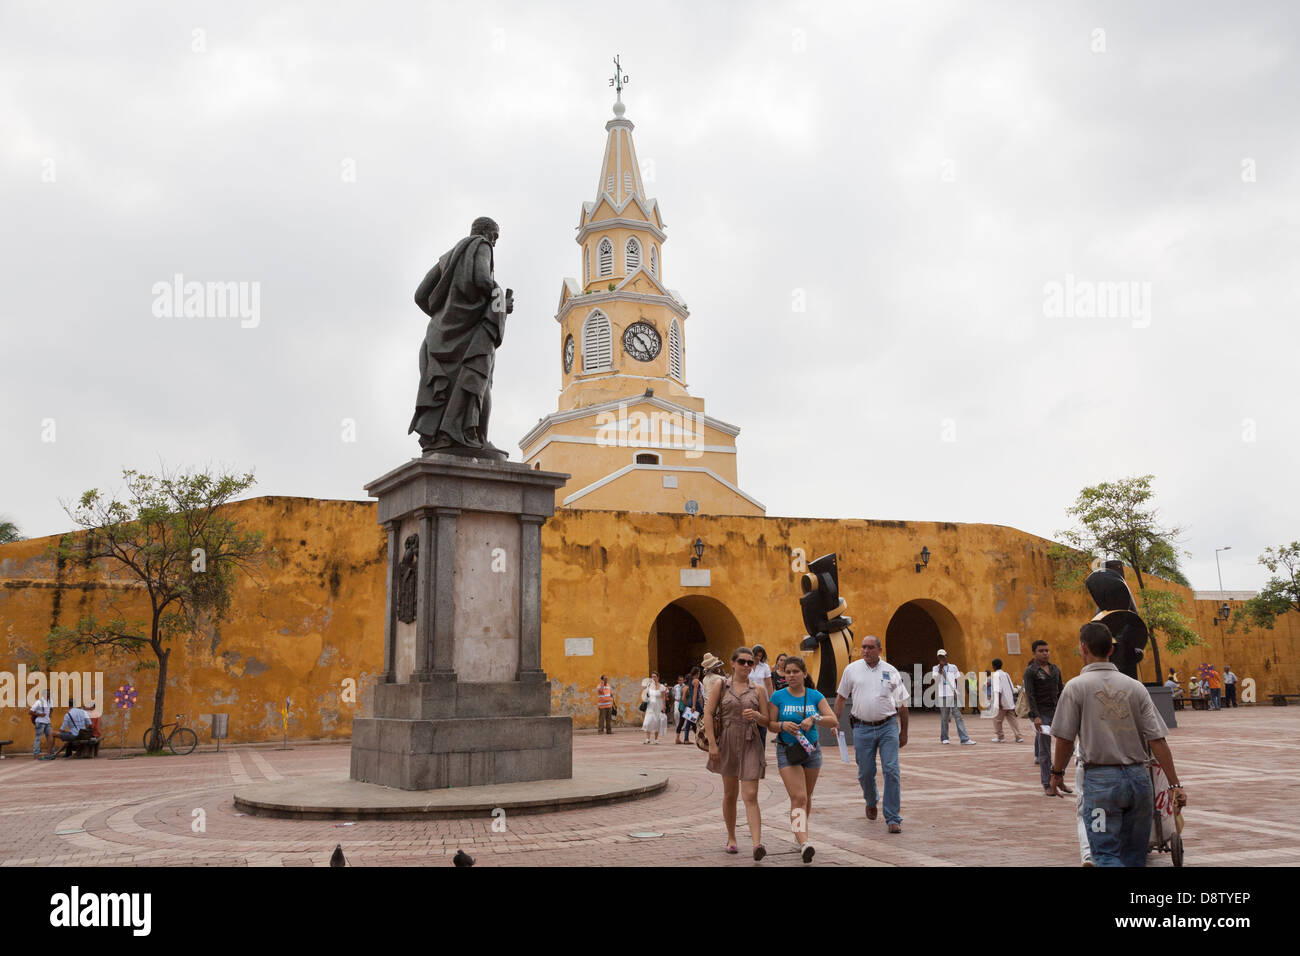 Pedro de Heredia Statue, Plaza de los Coches, Torre del Reloj, Clock Tower, Cartagena, Colombia Stock Photo